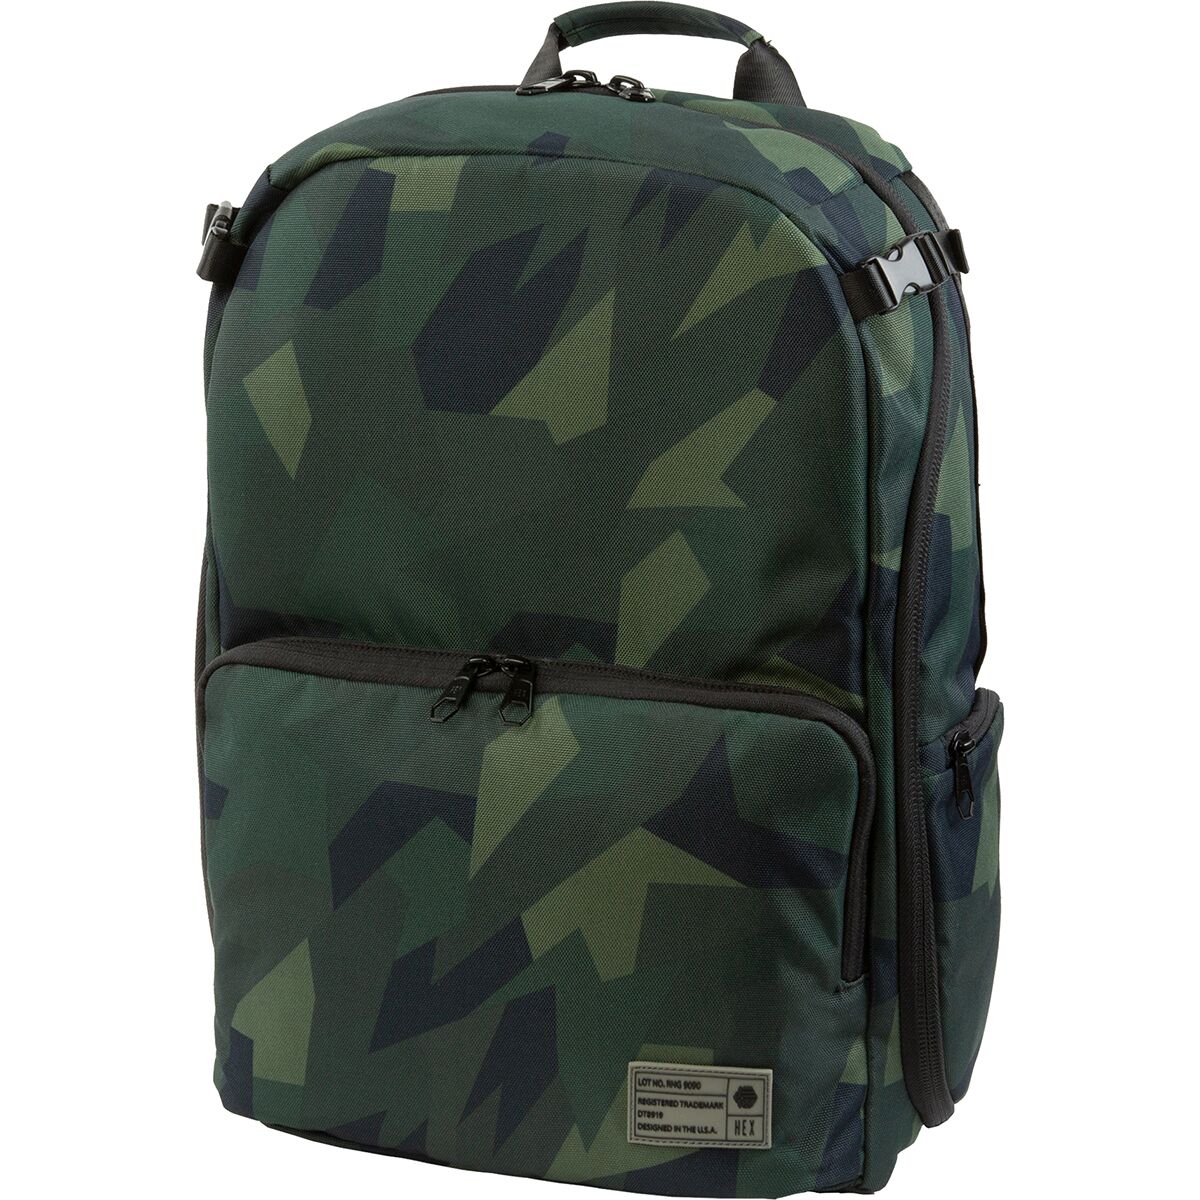 Hex Ranger Clamshell Backpack